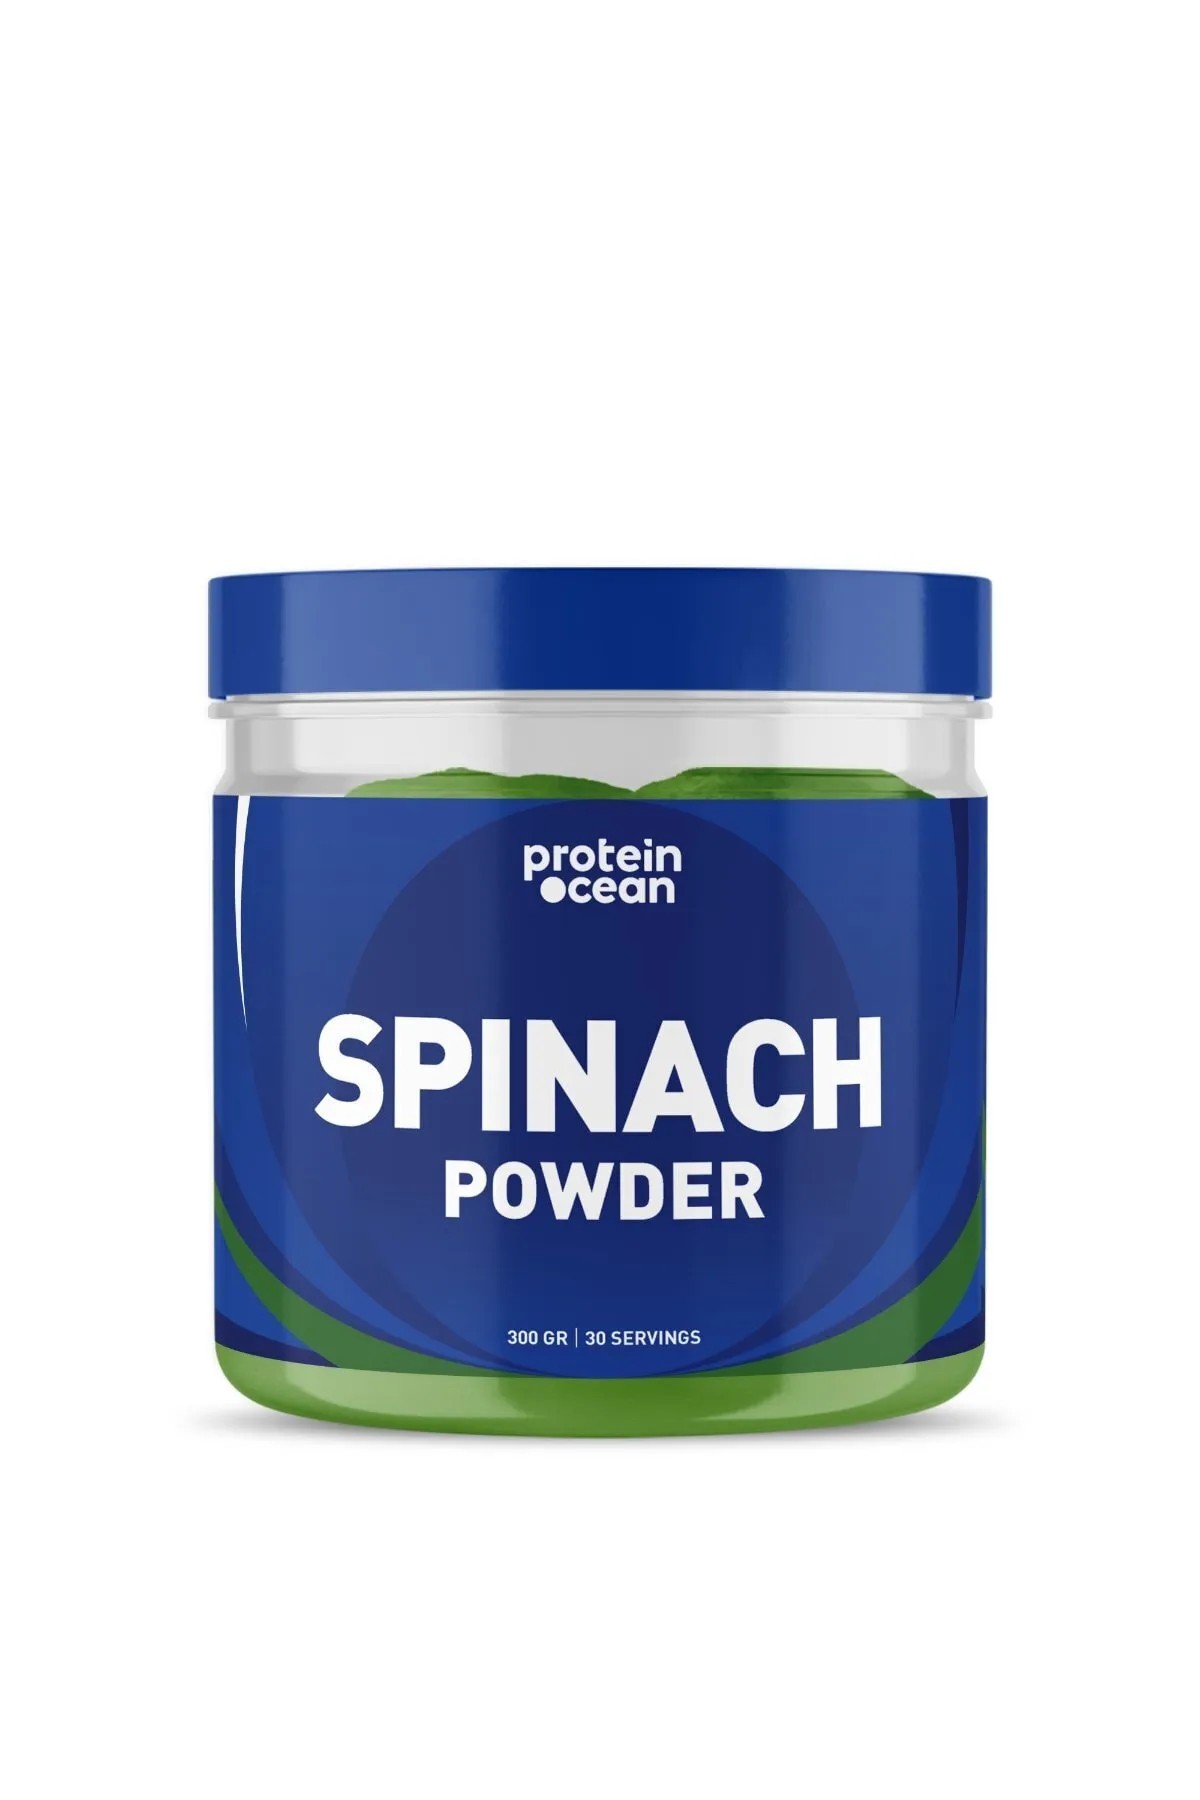 ProteinOcean Spinach Powder 300 gram